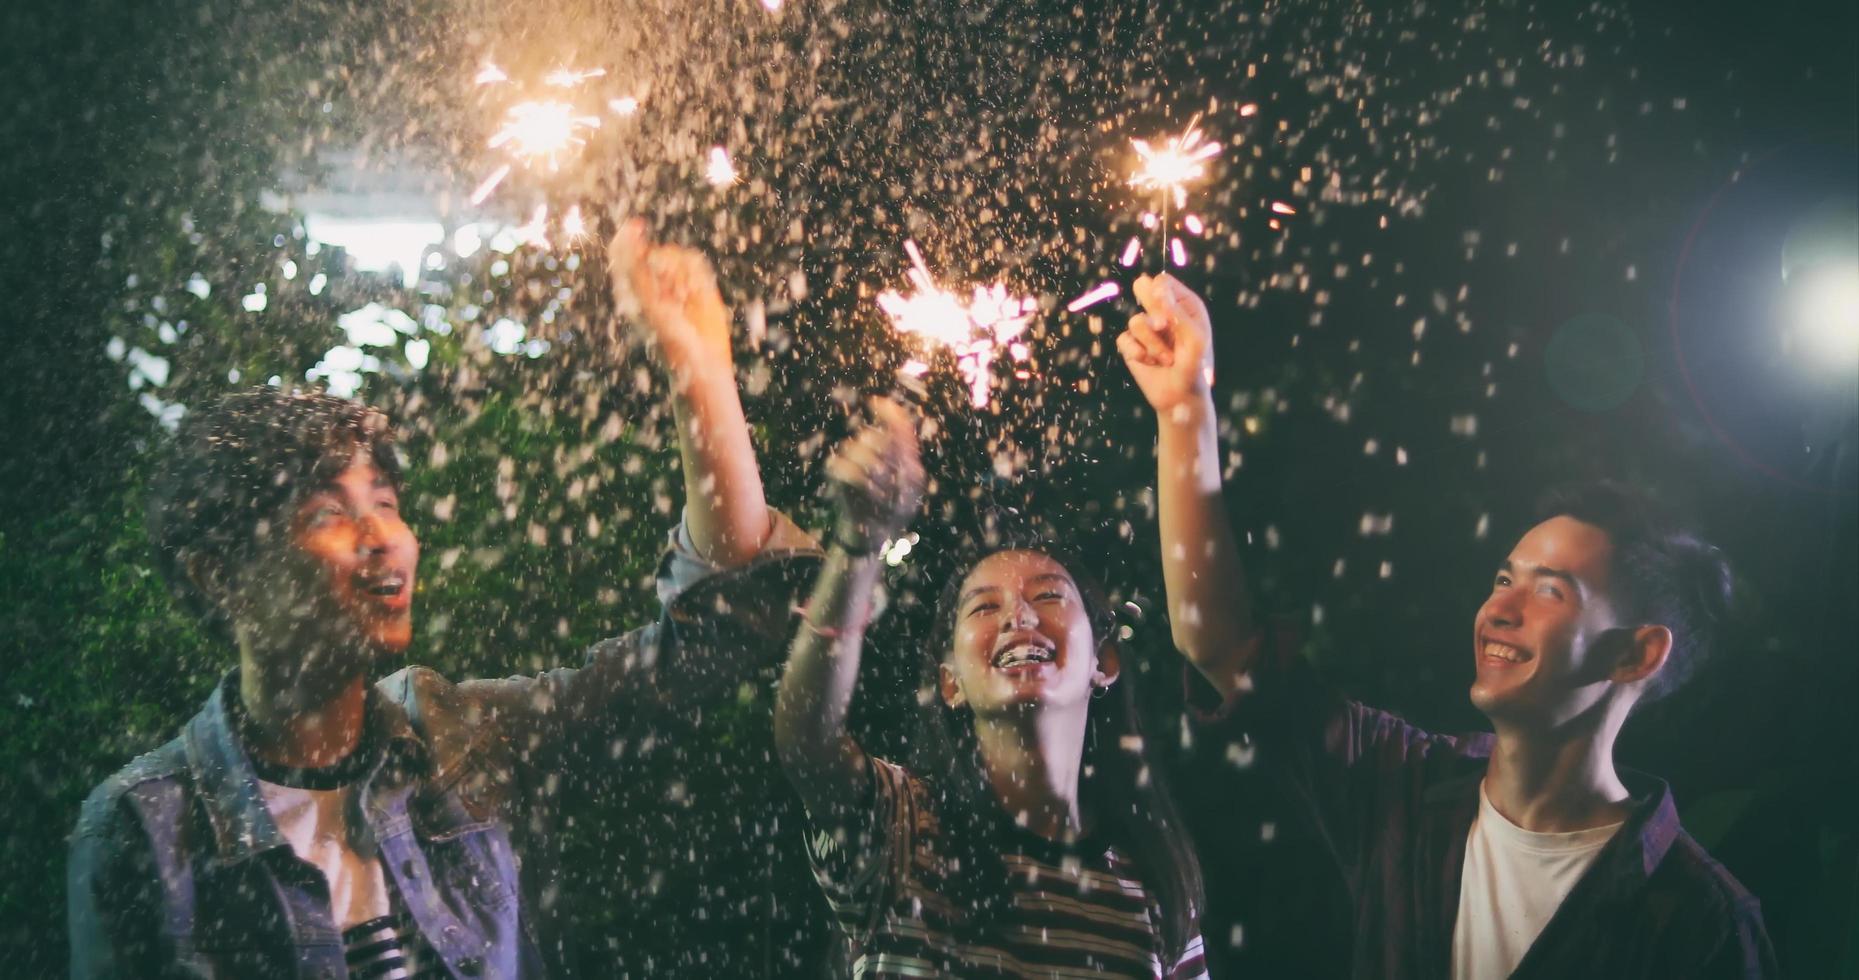 Grupo asiático de amigos con barbacoa en el jardín al aire libre riendo con bebidas alcohólicas de cerveza y mostrando un grupo de amigos divirtiéndose con bengalas en la noche, enfoque suave foto